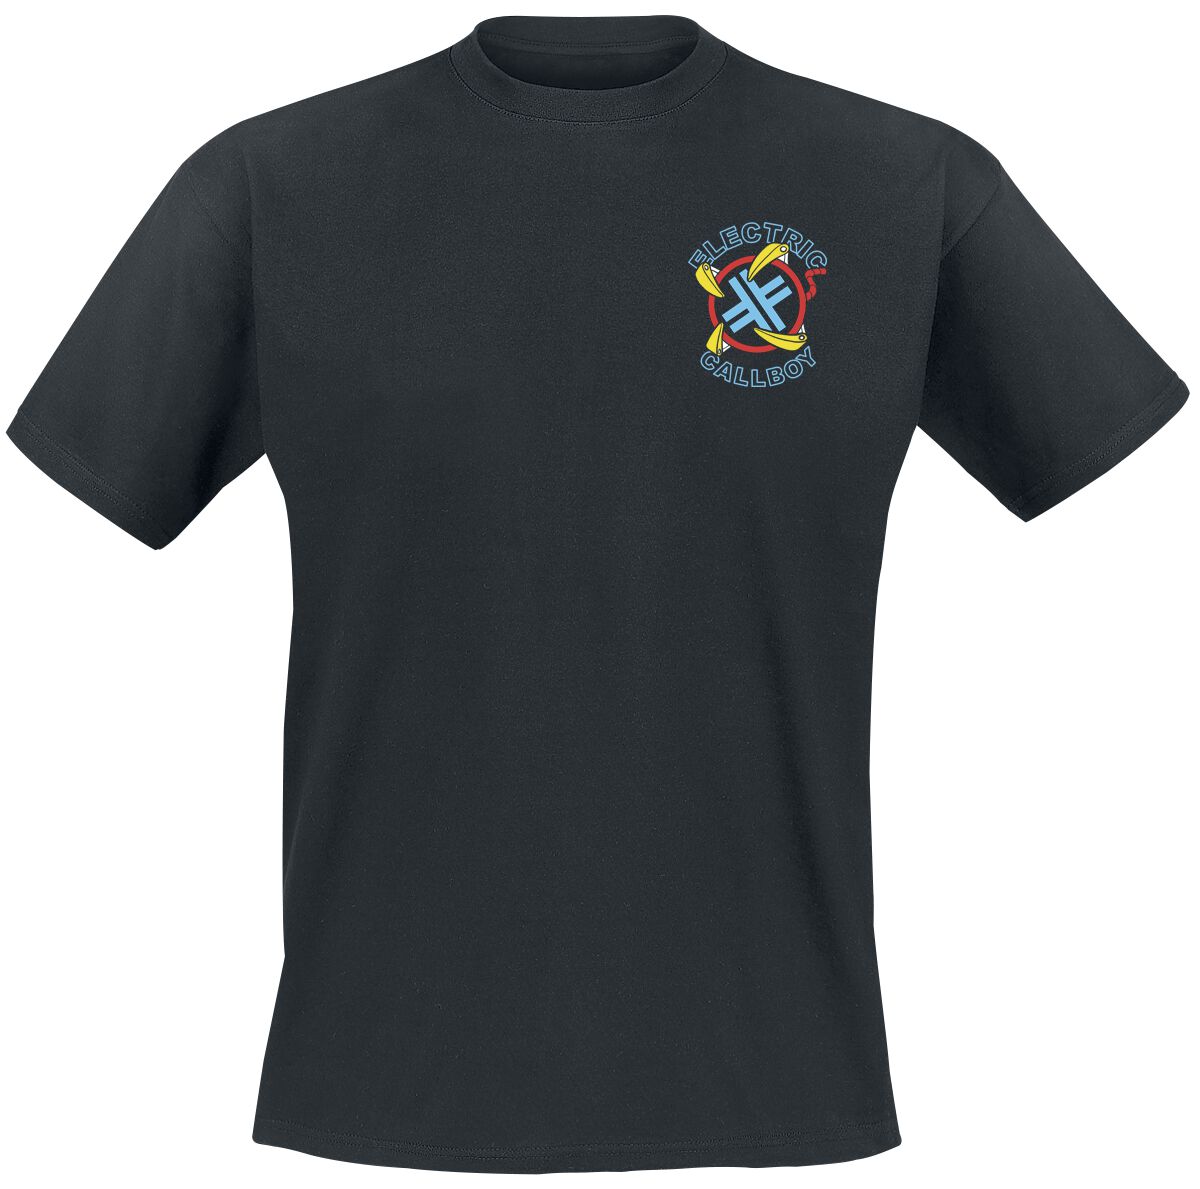 Electric Callboy T-Shirt - Let`s Play - S bis 3XL - für Männer - Größe M - schwarz  - Lizenziertes Merchandise!